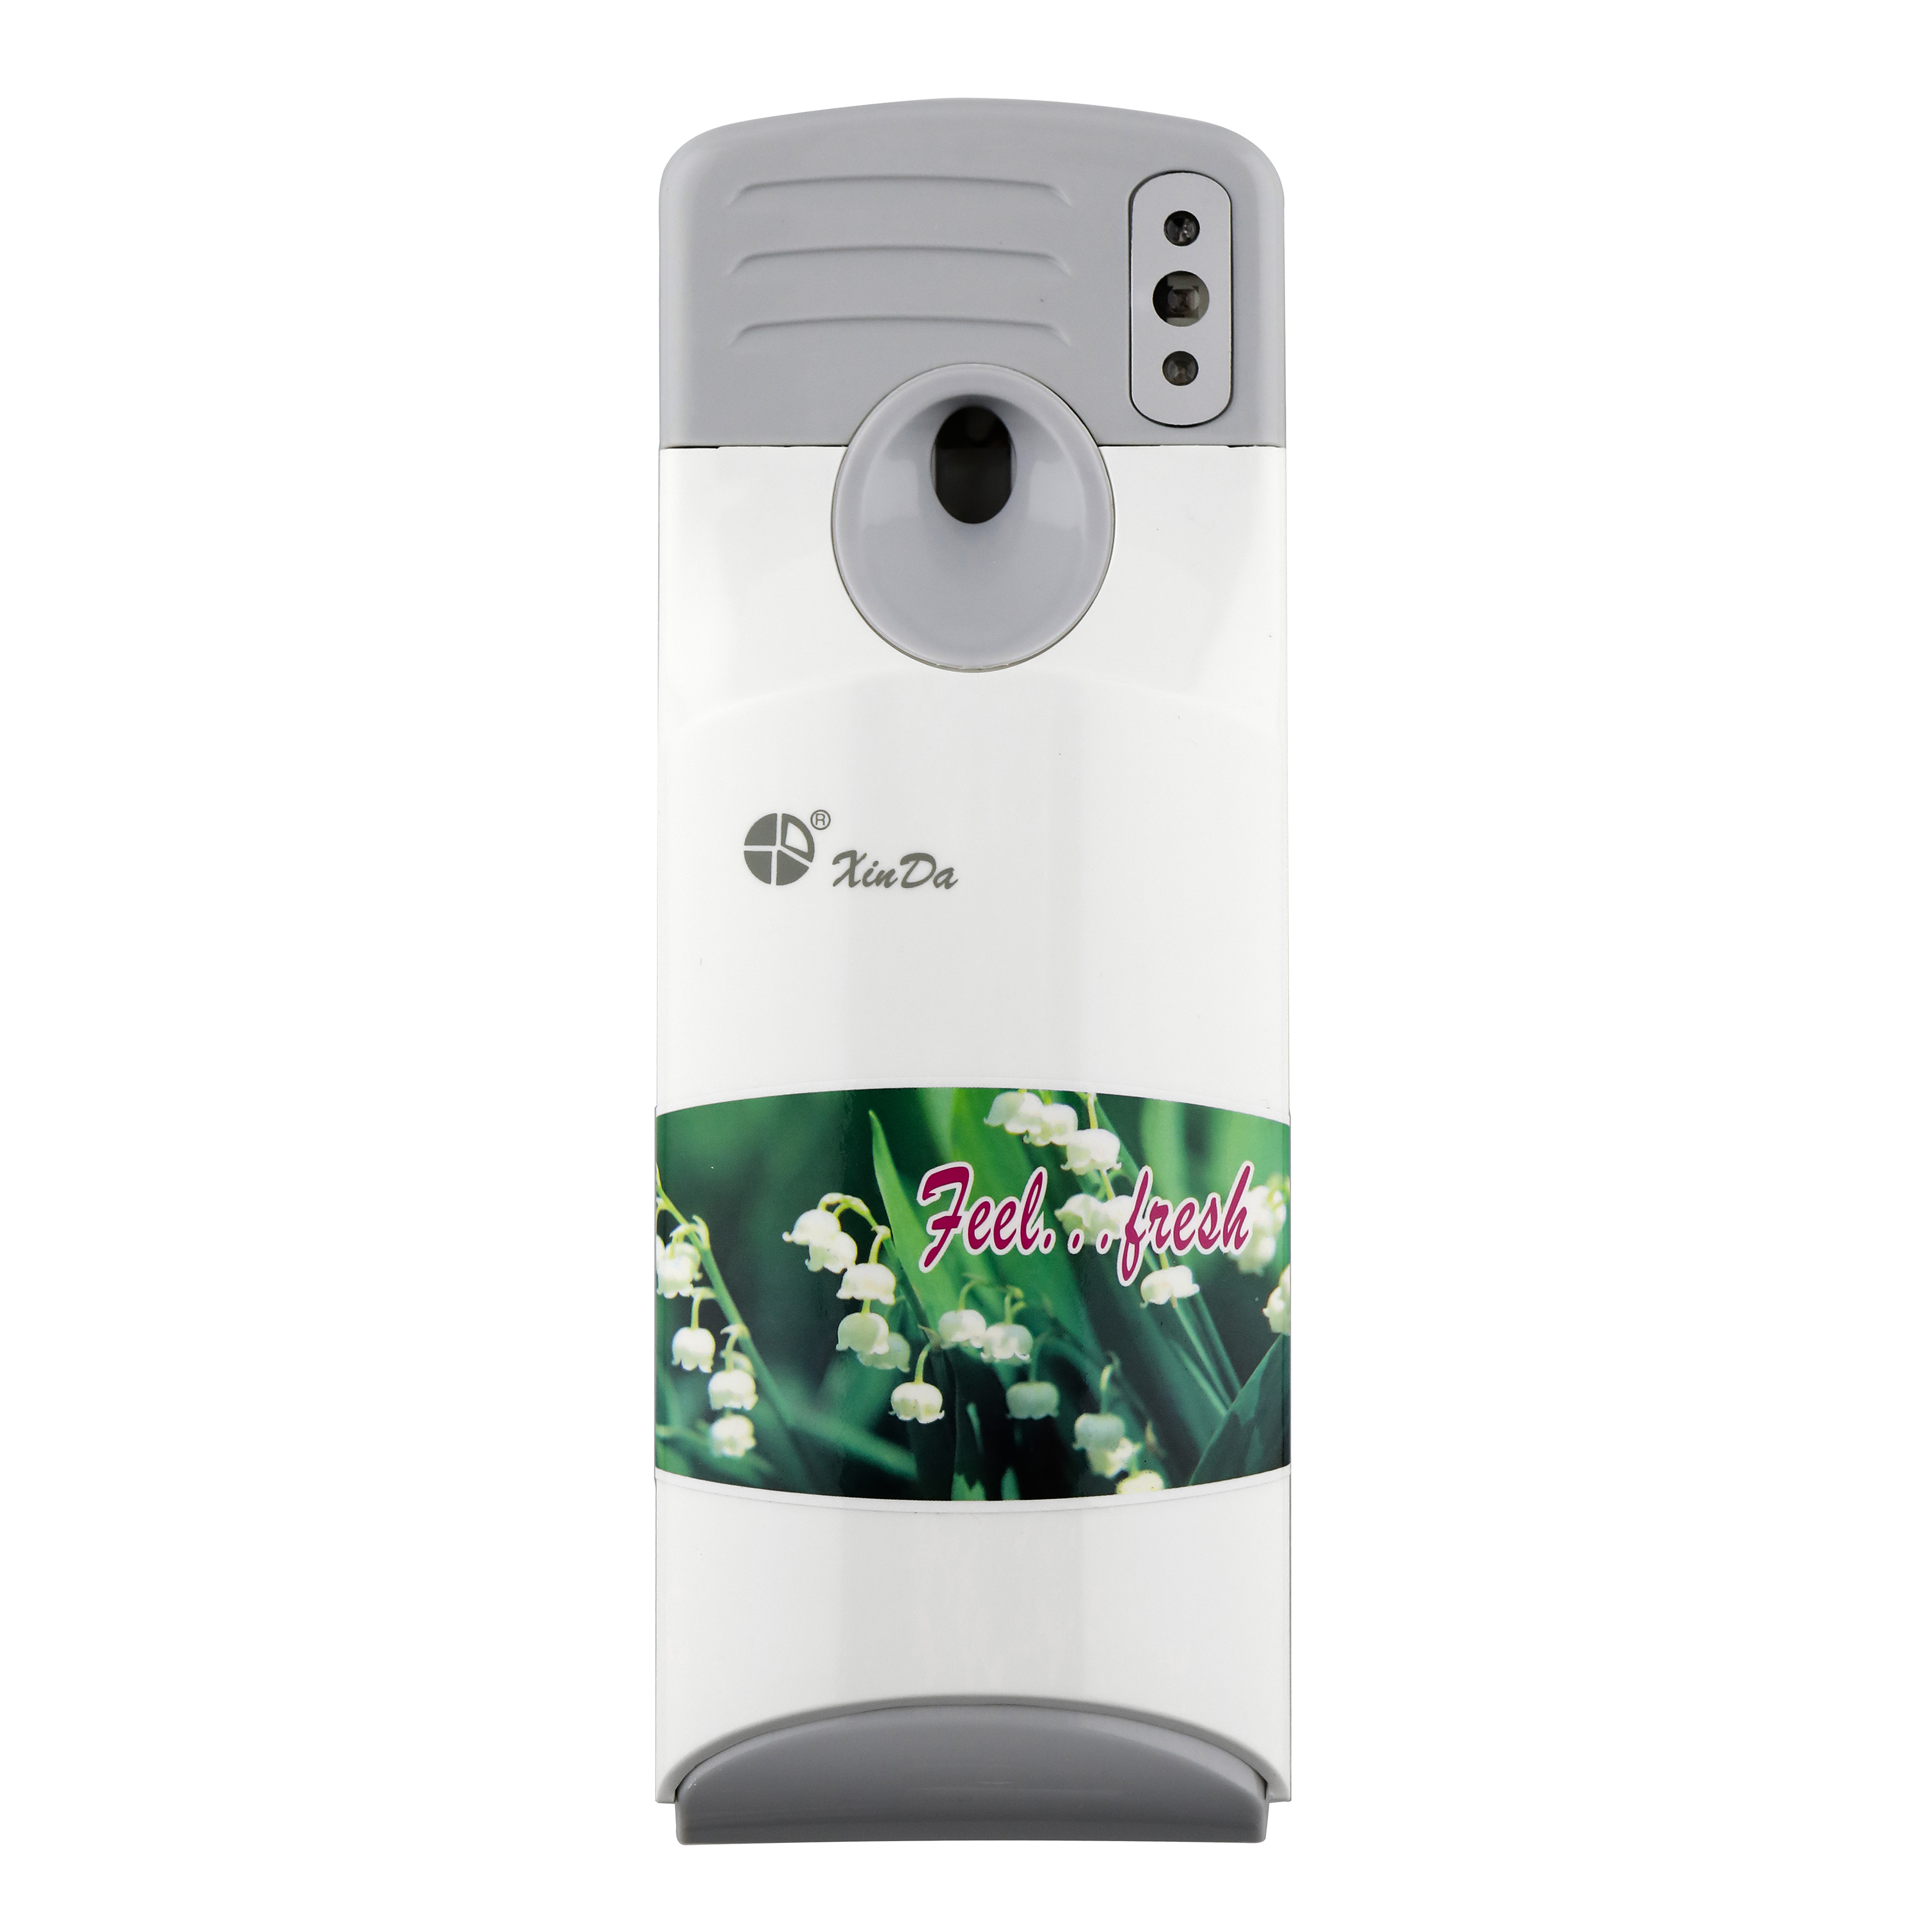 XINDA PXQ288A Distributeur automatique de parfum à distance